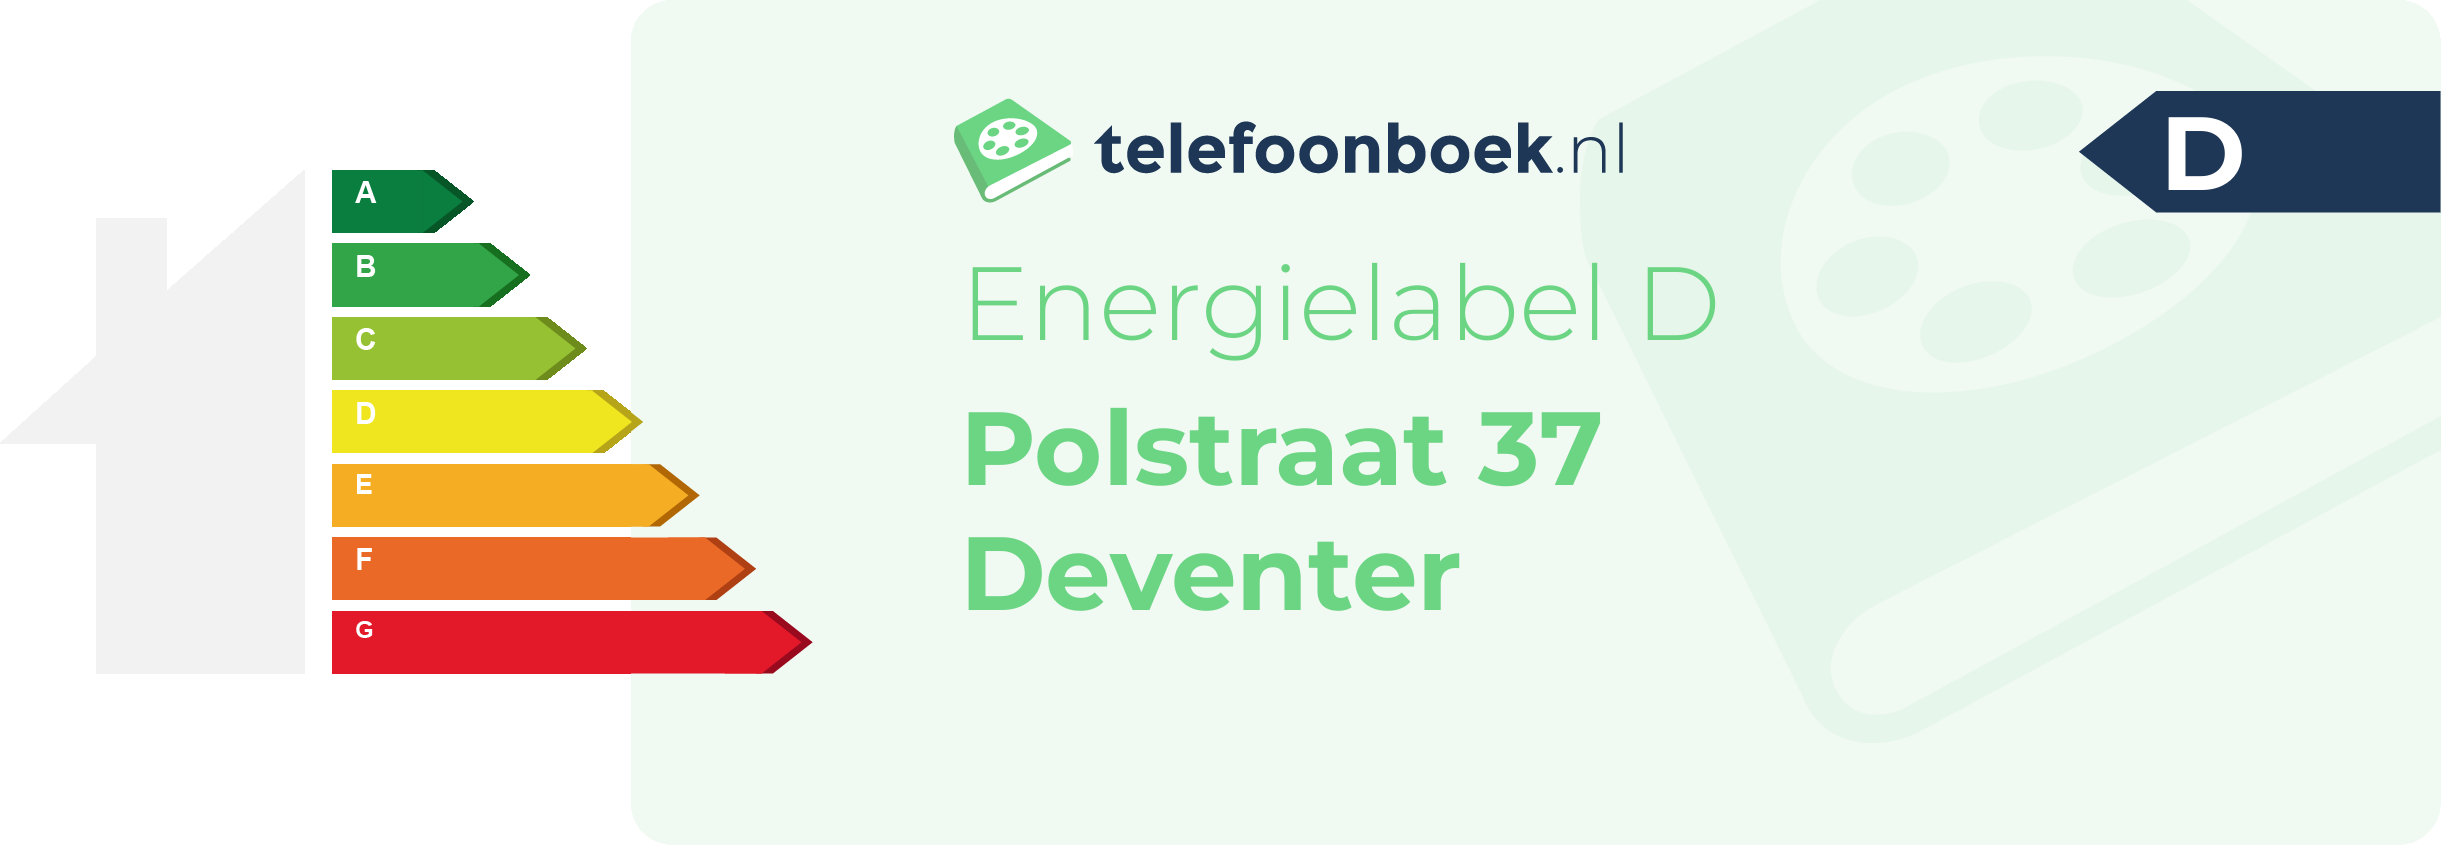 Energielabel Polstraat 37 Deventer